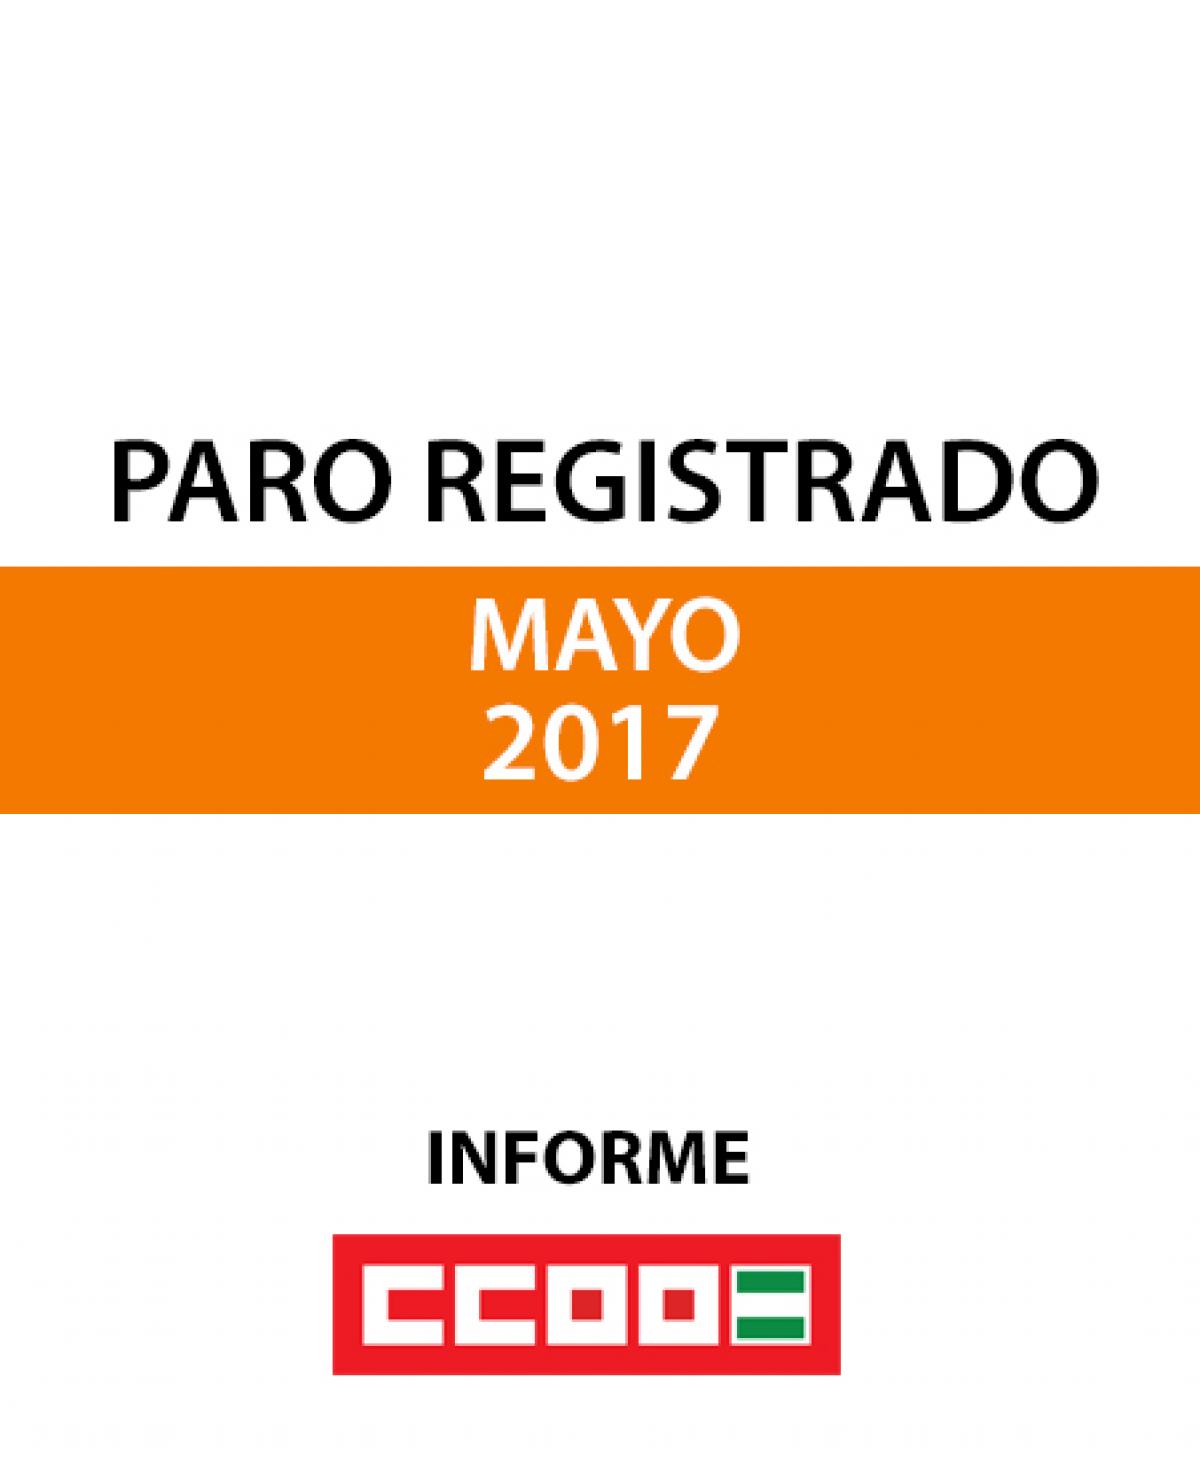 Paro registrado mayo 2017